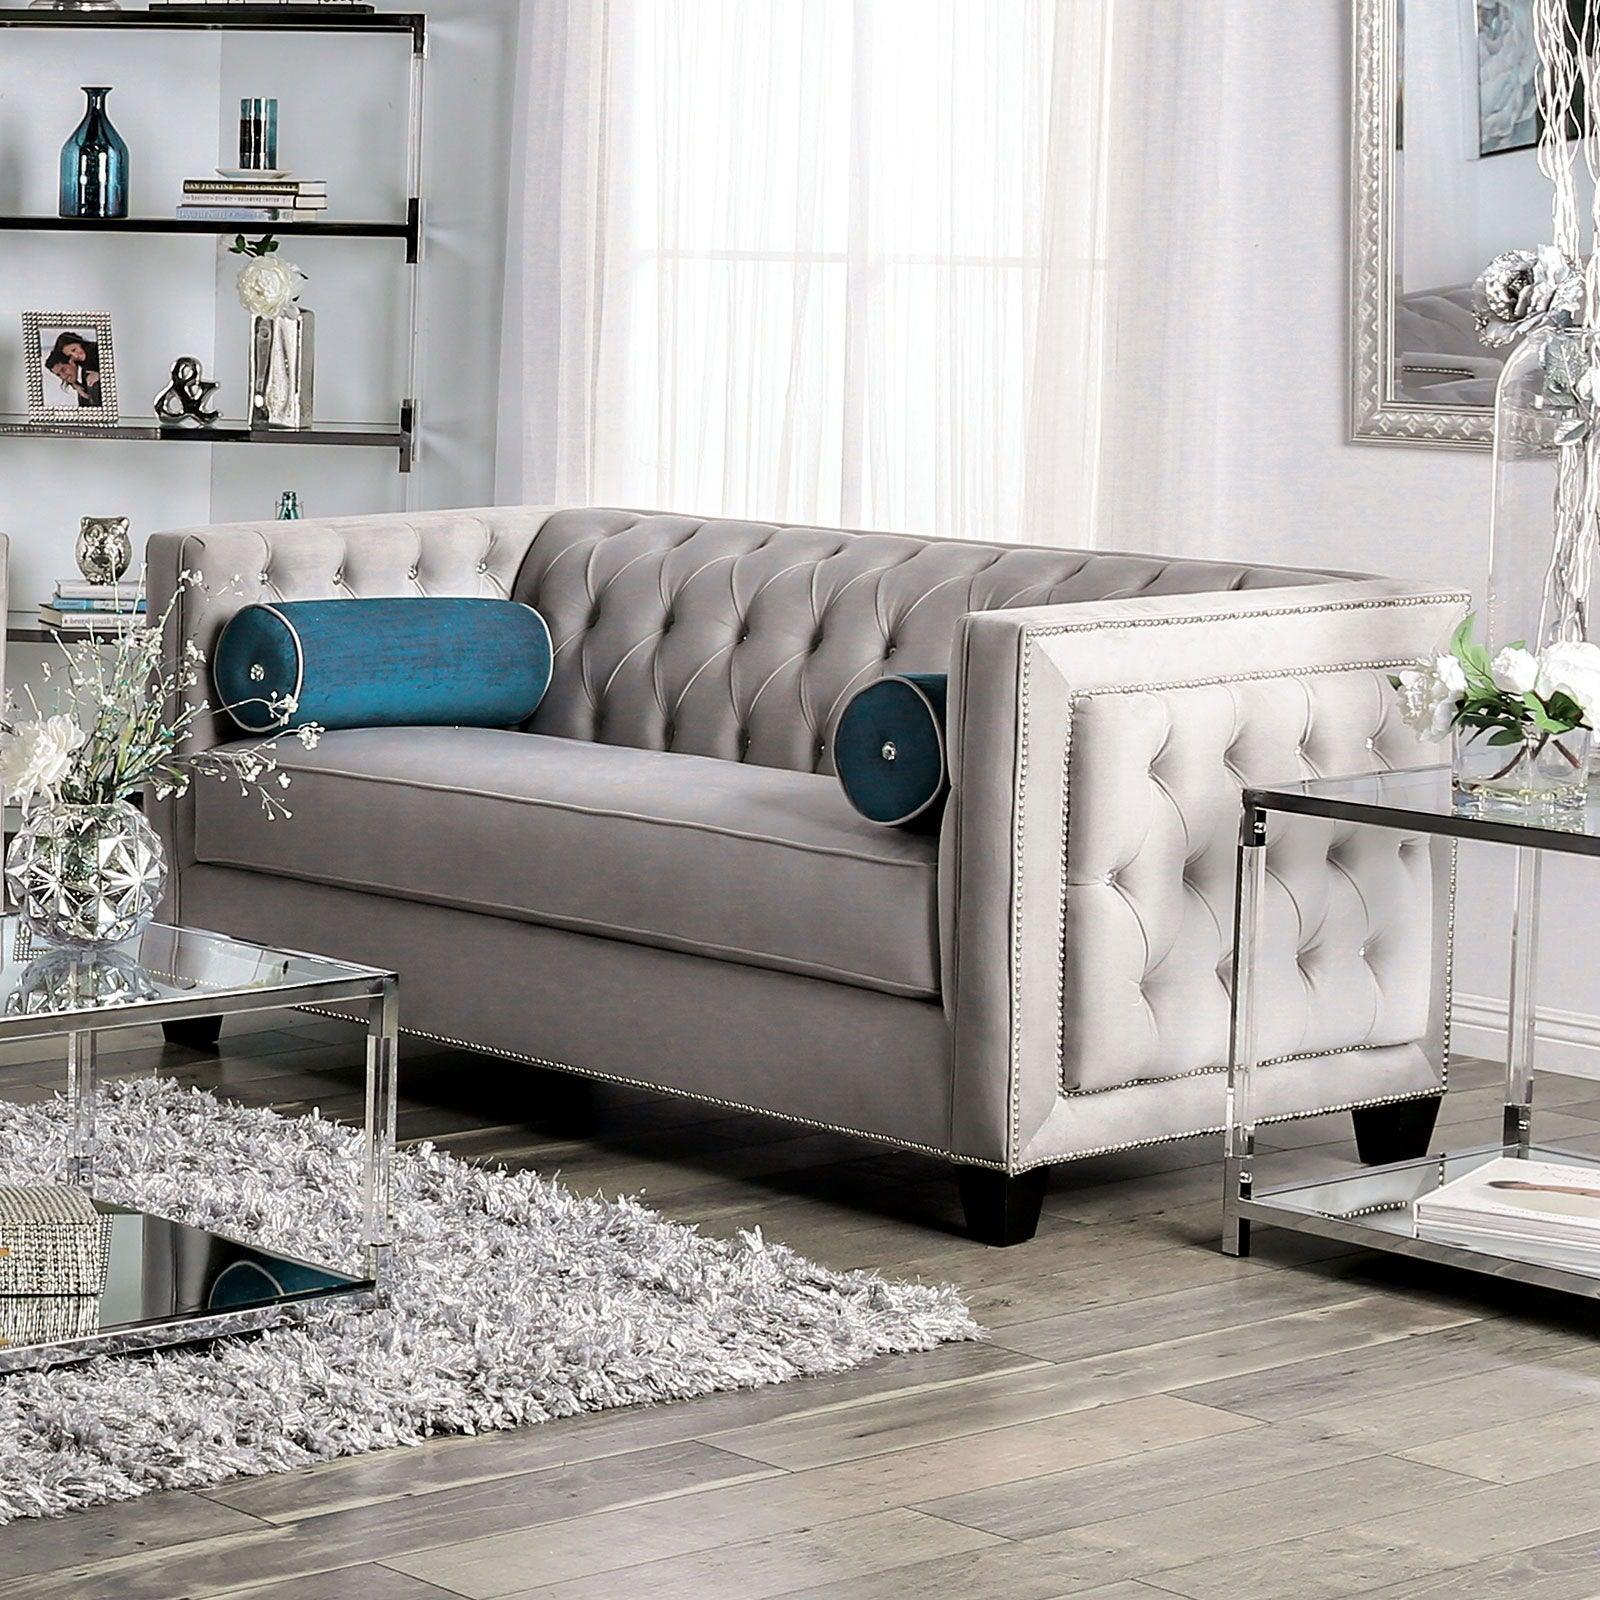 Furniture of America - Silvan - Loveseat - Gray - 5th Avenue Furniture